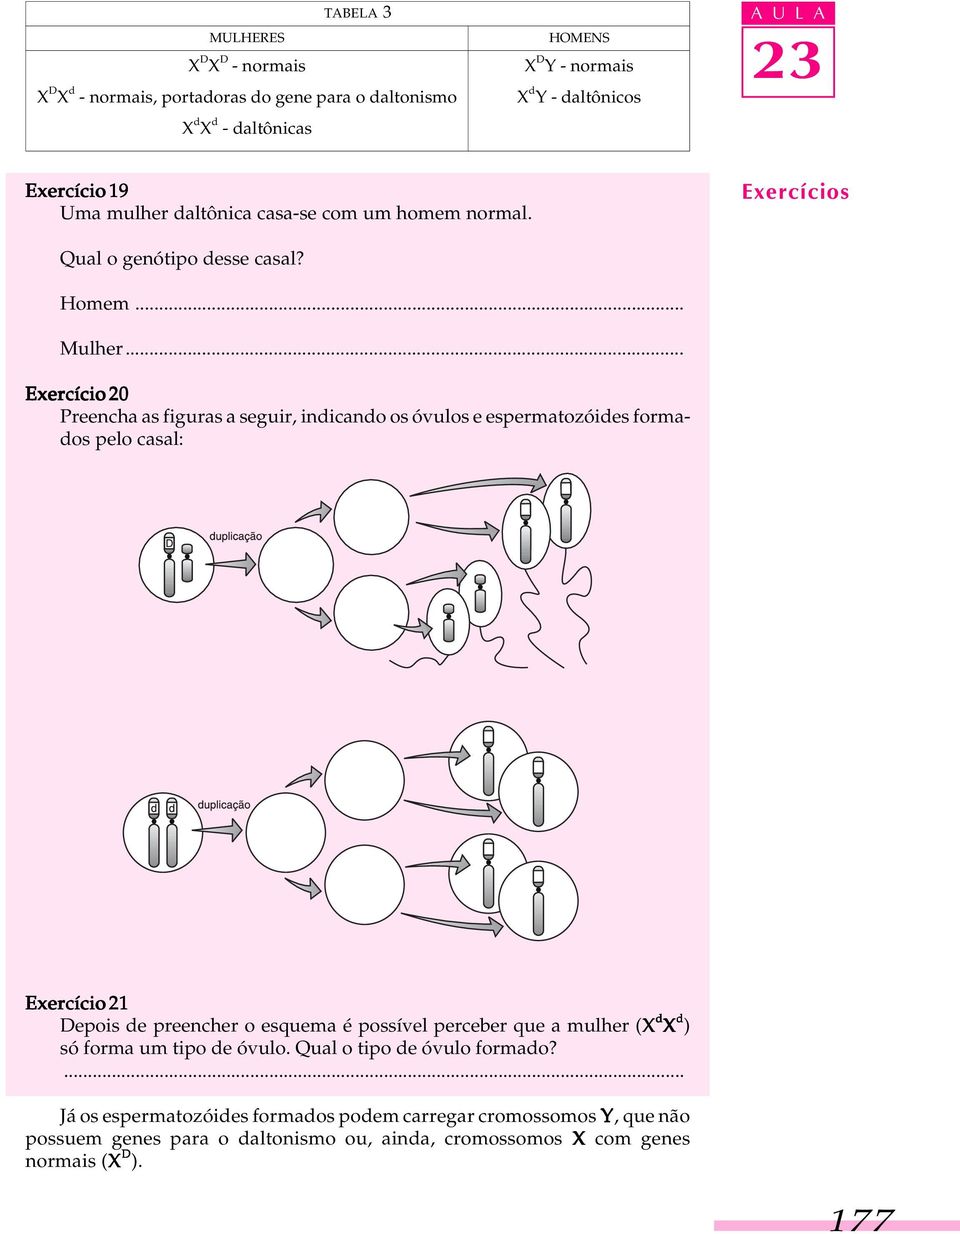 .. Exercício 20 Preencha as figuras a seguir, indicando os óvulos e espermatozóides formados pelo casal: Exercício 21 Depois de preencher o esquema é possível